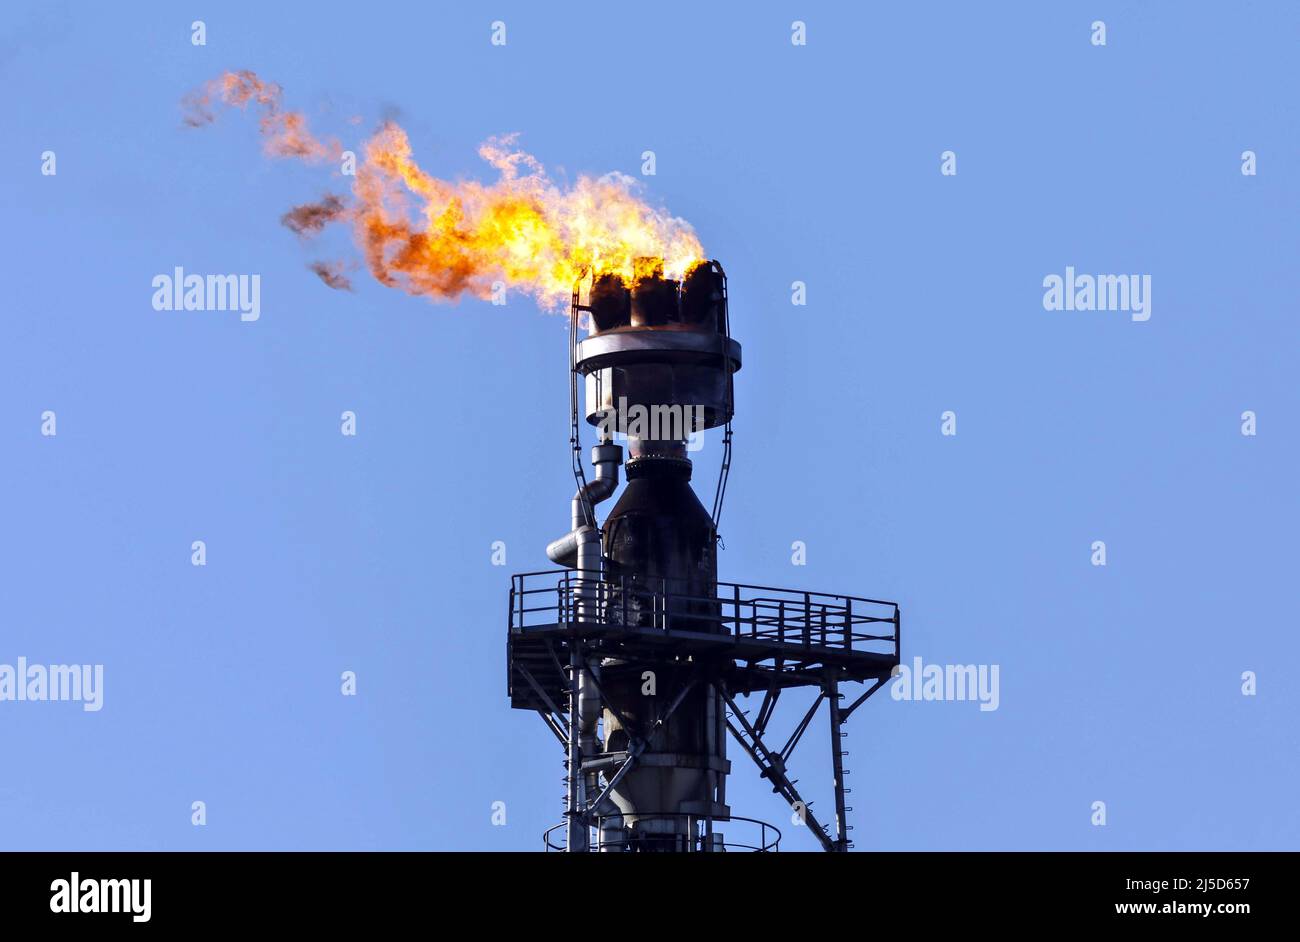 'Schwedt, 7 mars 2022 - l'excès de gaz issu de la transformation du pétrole brut à PCK-Raffinerie GmbH, à Schwedt, est incinéré. La raffinerie PCK est alimentée en pétrole brut de Russie par le pipeline ''Friendship''. En raison de la guerre en Ukraine, une interdiction des importations de pétrole brut et de gaz russes est envisagée. [traduction automatique]' Banque D'Images